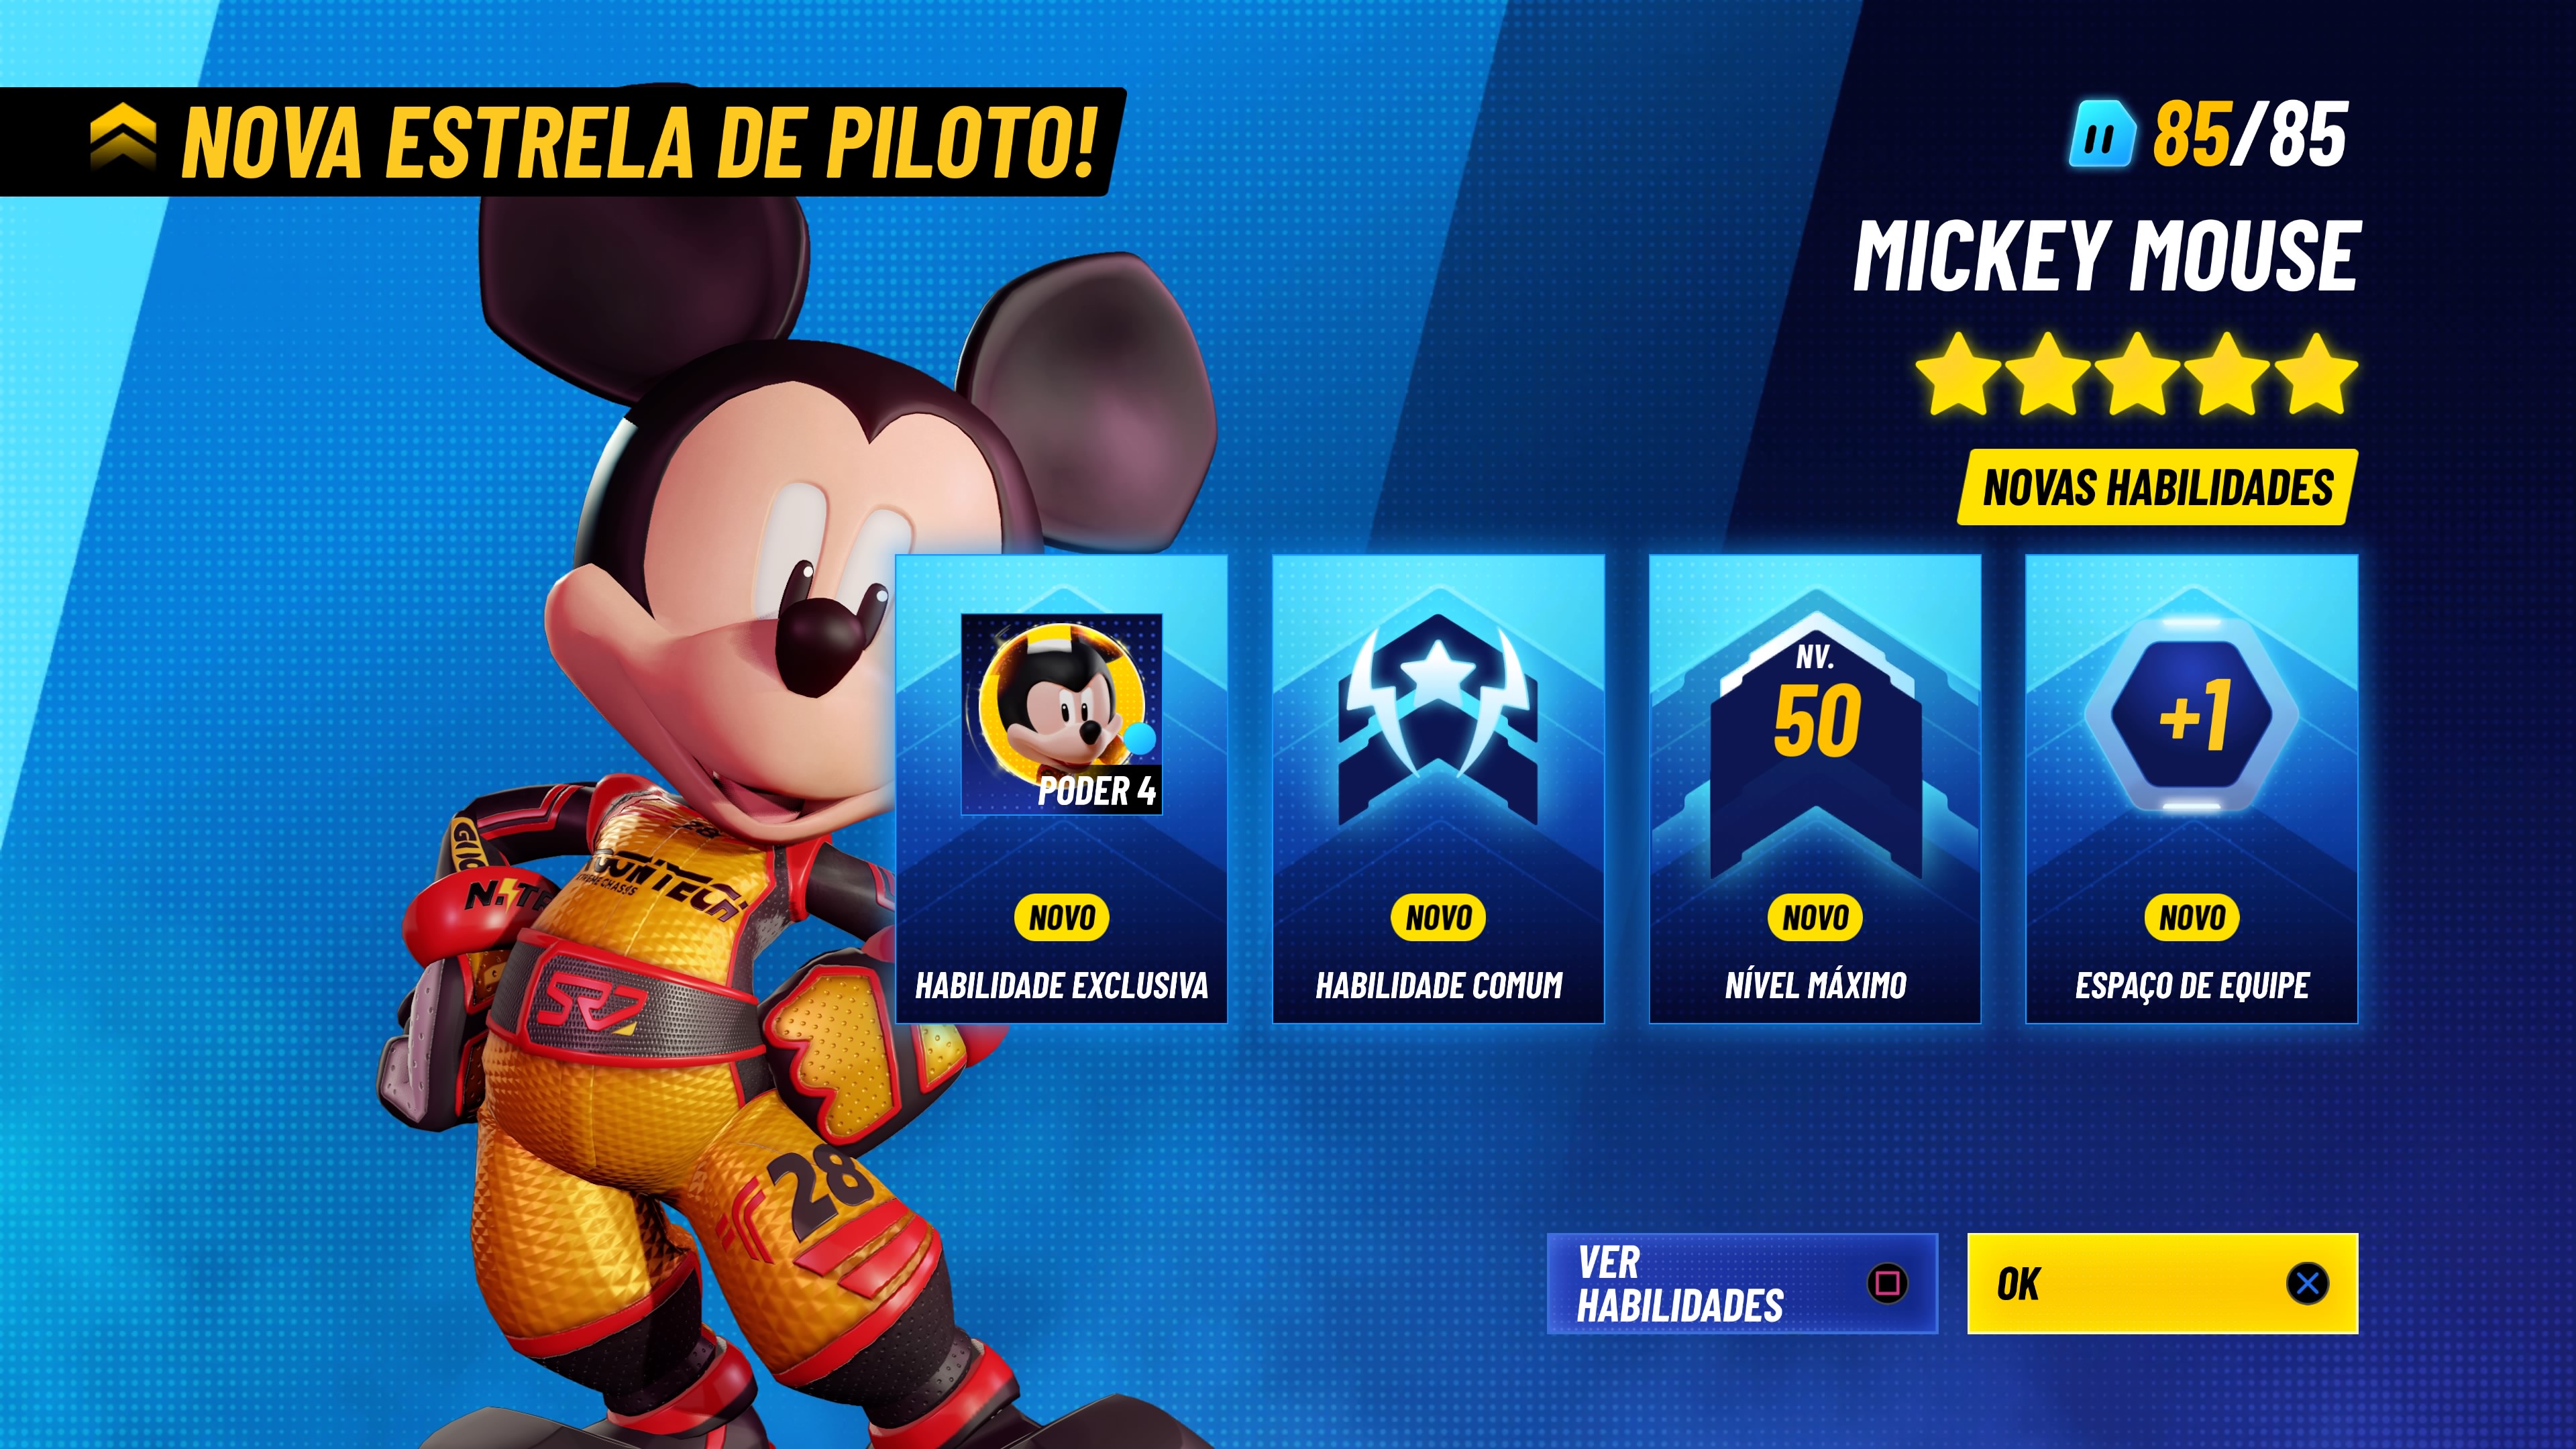 Disney Speedstorm: veja gameplay e requisitos do jogo de corrida